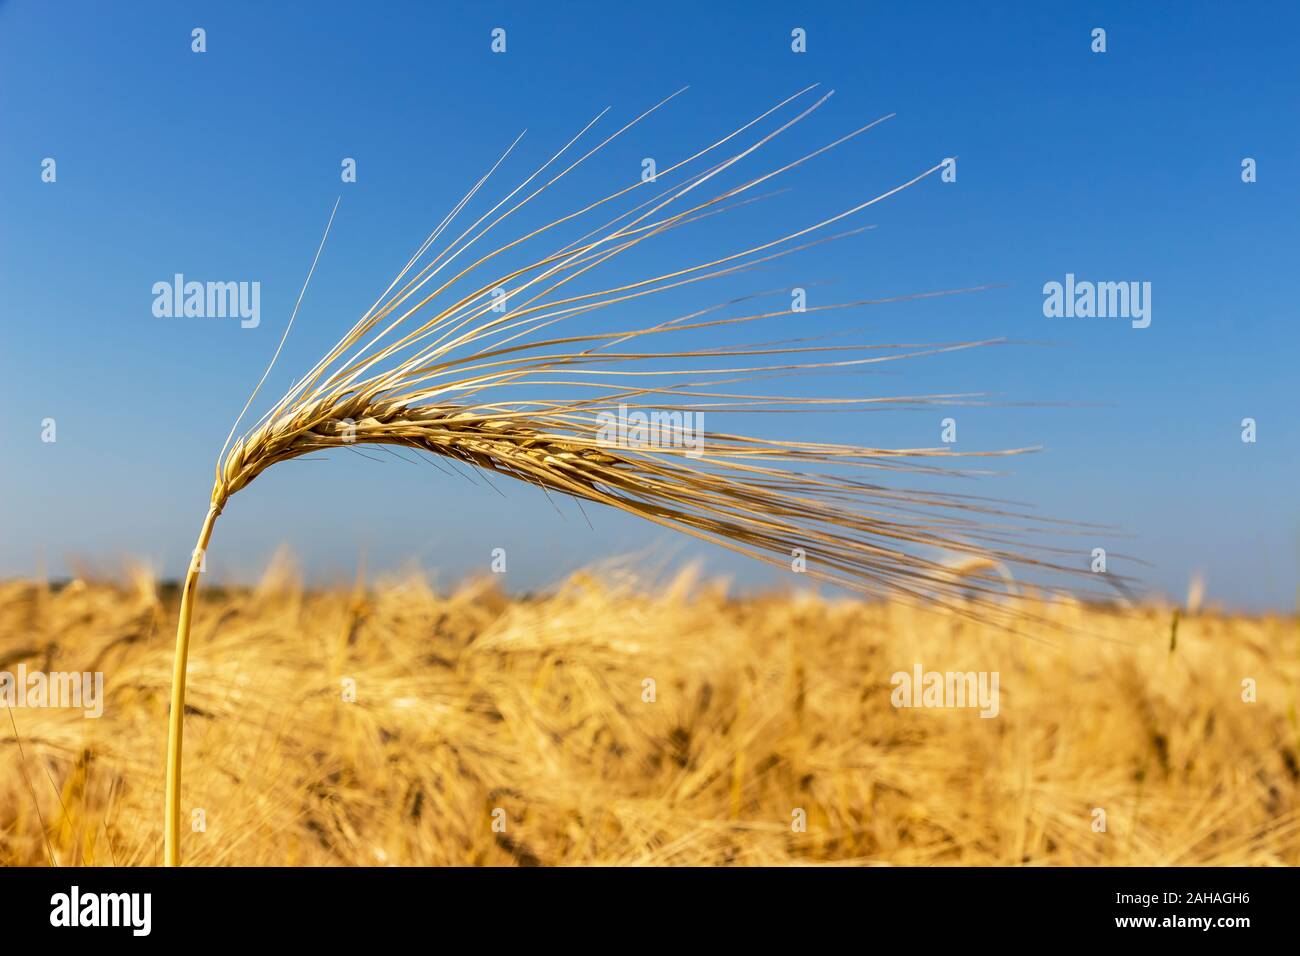 Ein Getreidefeld mit Gerste wartet auf die Ernte. Symbolfoto für Landwirtschaft und gesunde Ernährung, einzelne Ähre, blauer Himmel, Foto Stock